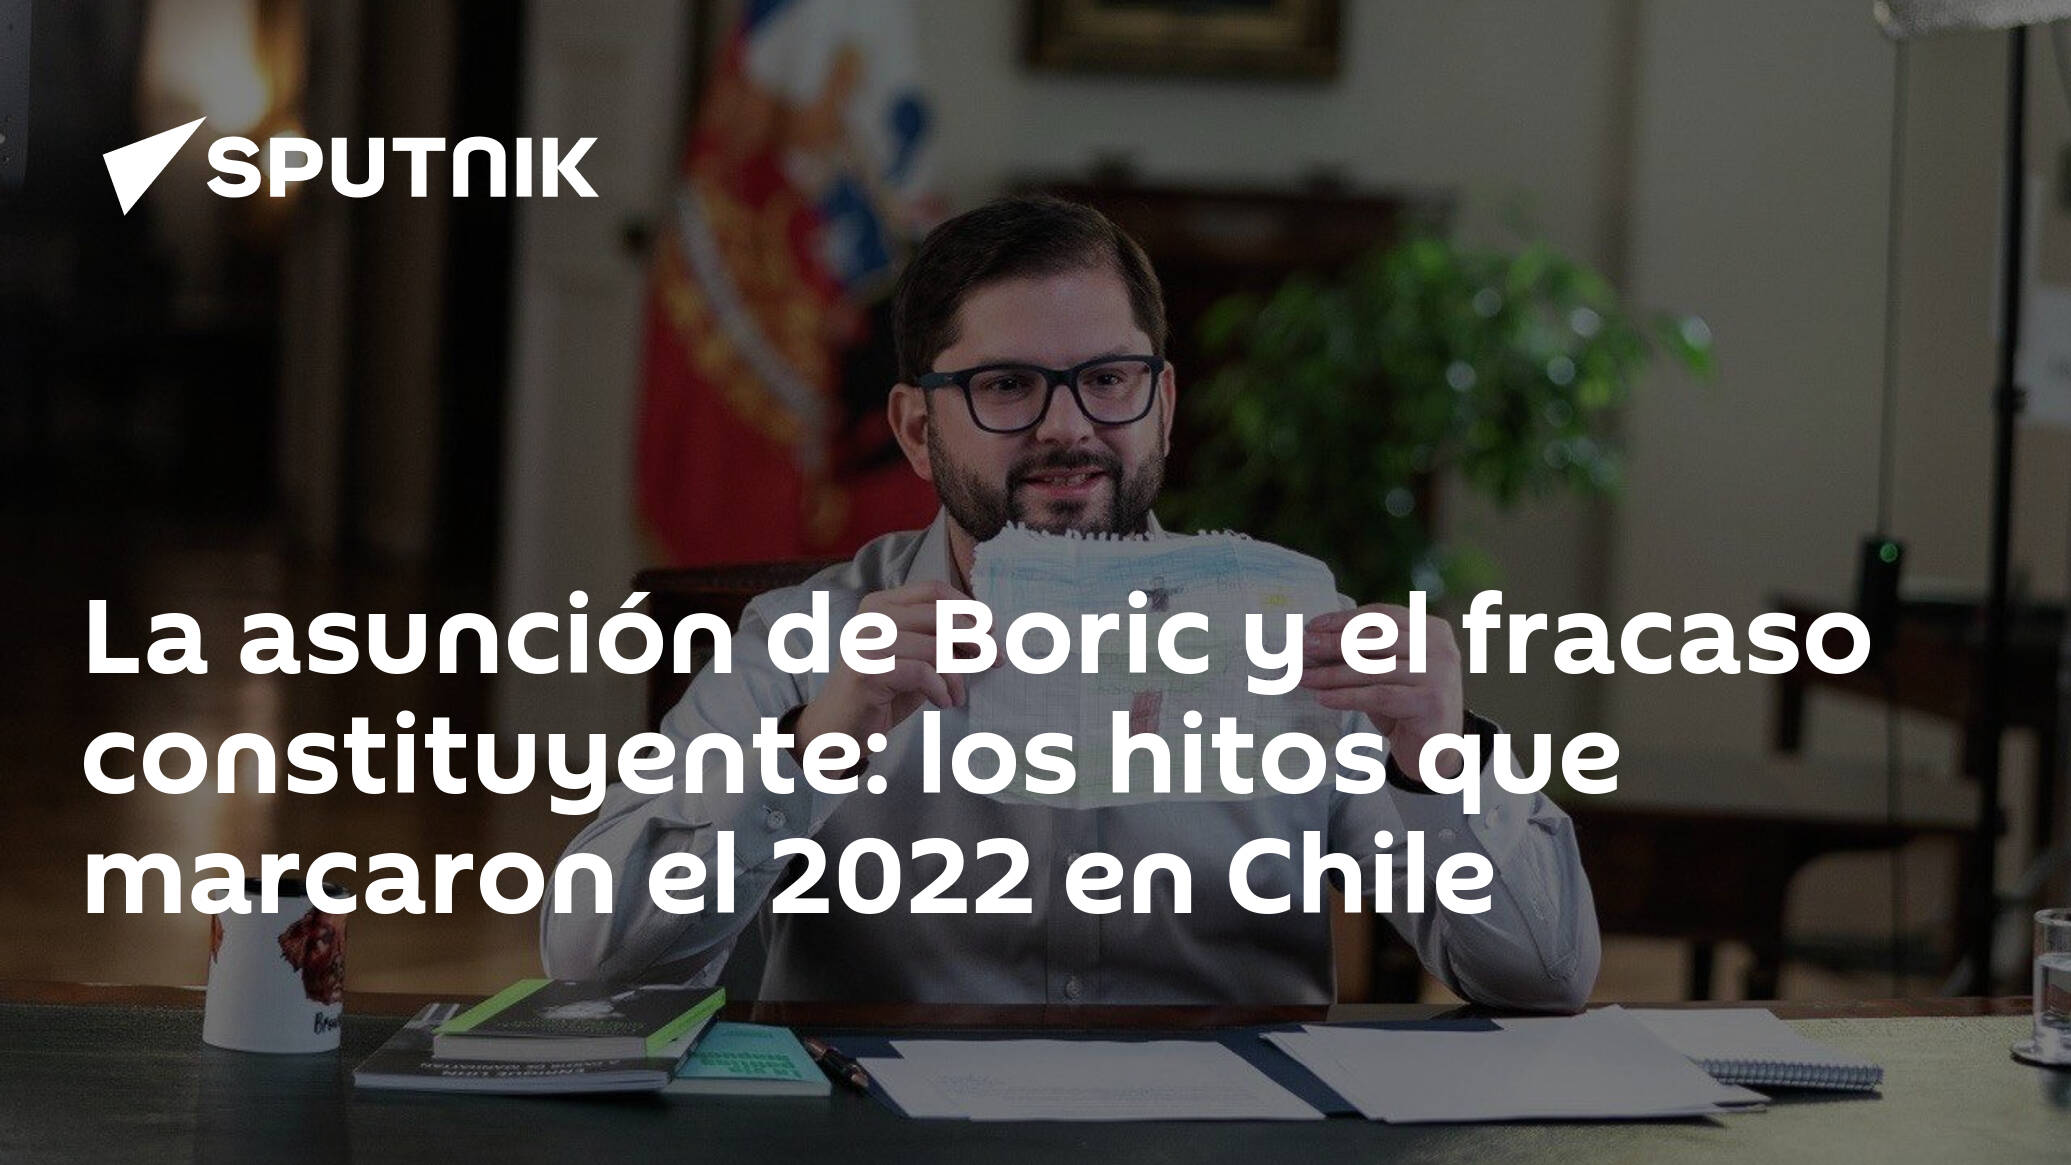 La Asunción De Boric Y El Fracaso Constituyente Los Hitos Que Marcaron El 2022 En Chile 28 12